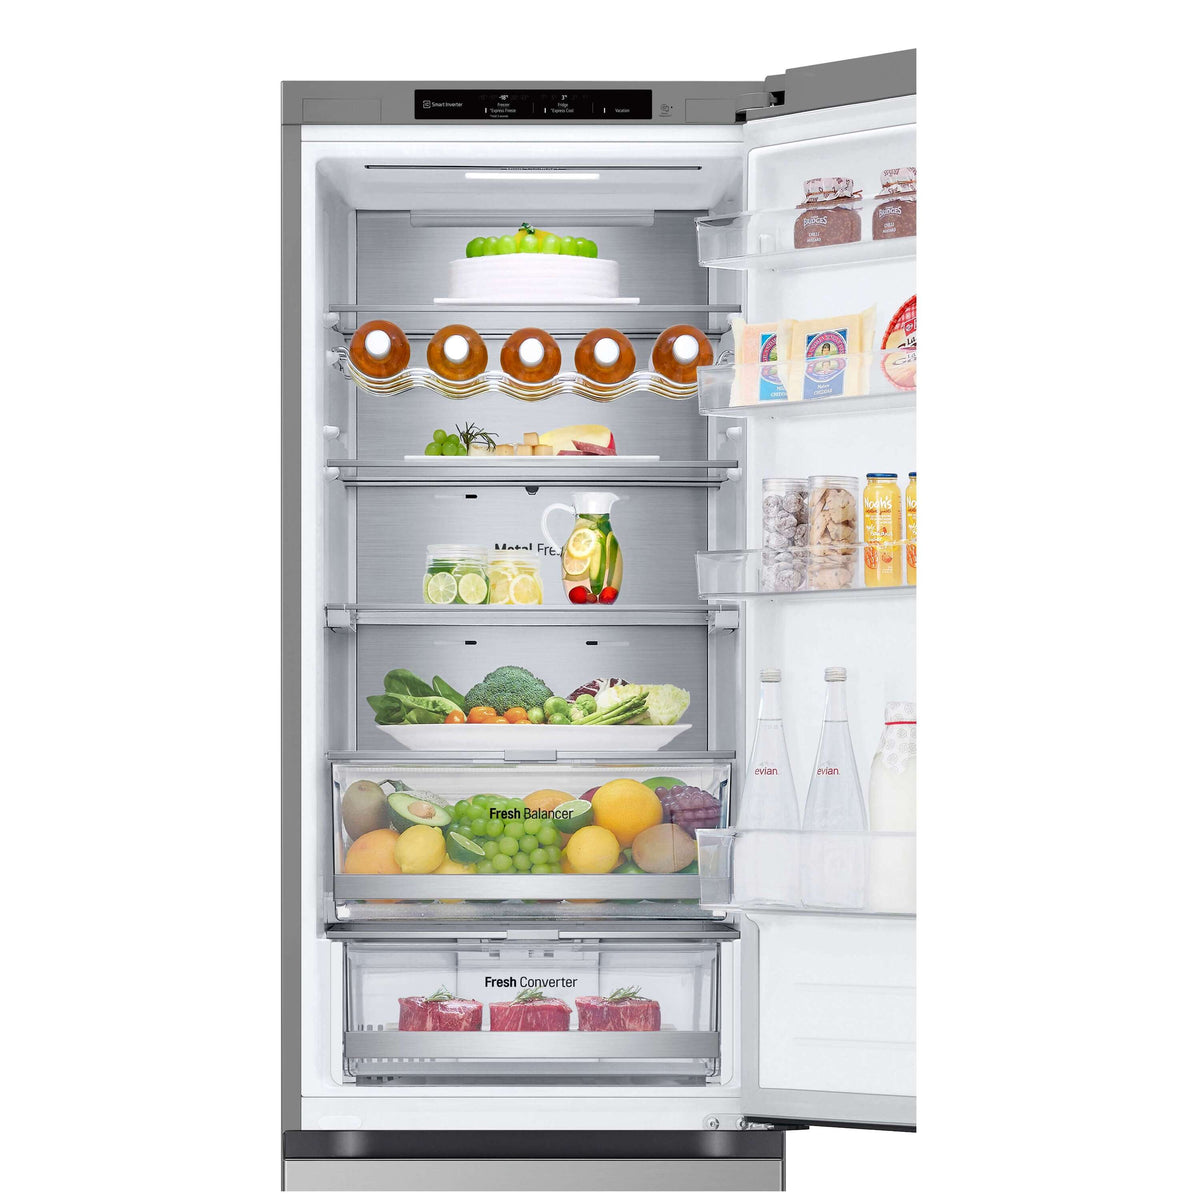 Kombinovaná chladnička s mrazničkou dole LG GBV7280BPY